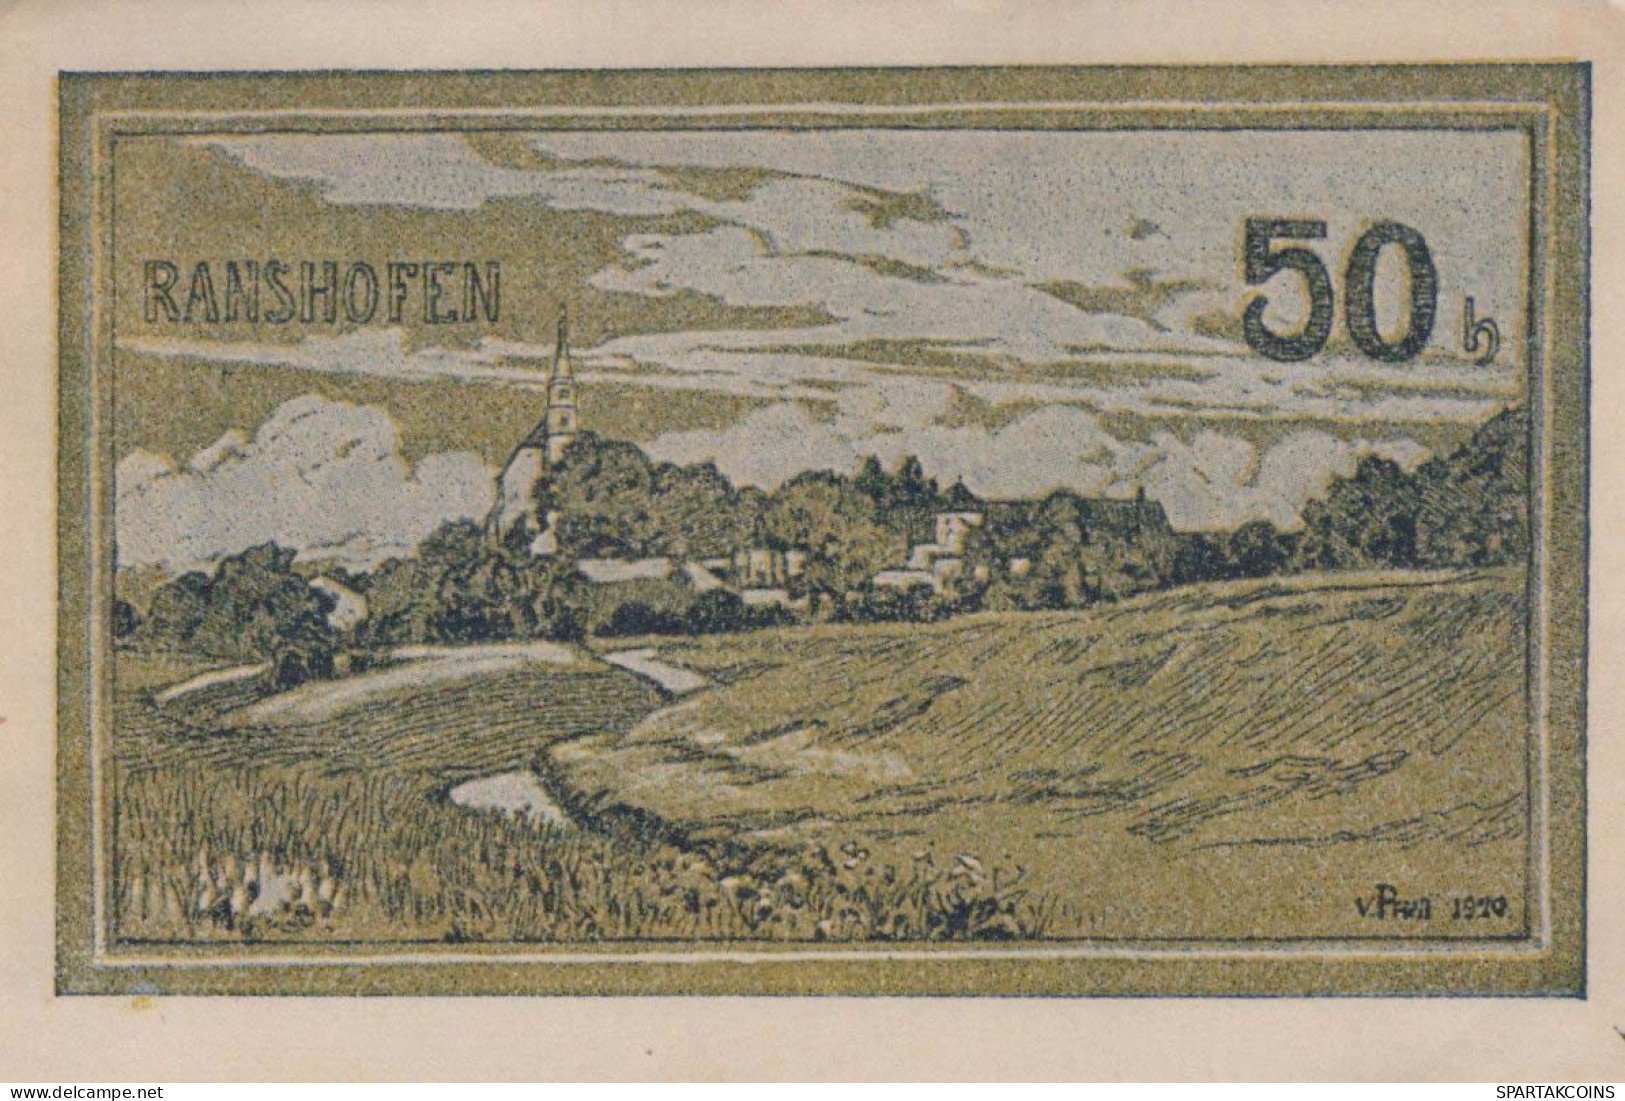 50 HELLER 1920 Stadt RANSHOFEN Oberösterreich Österreich Notgeld Banknote #PE561 - [11] Local Banknote Issues